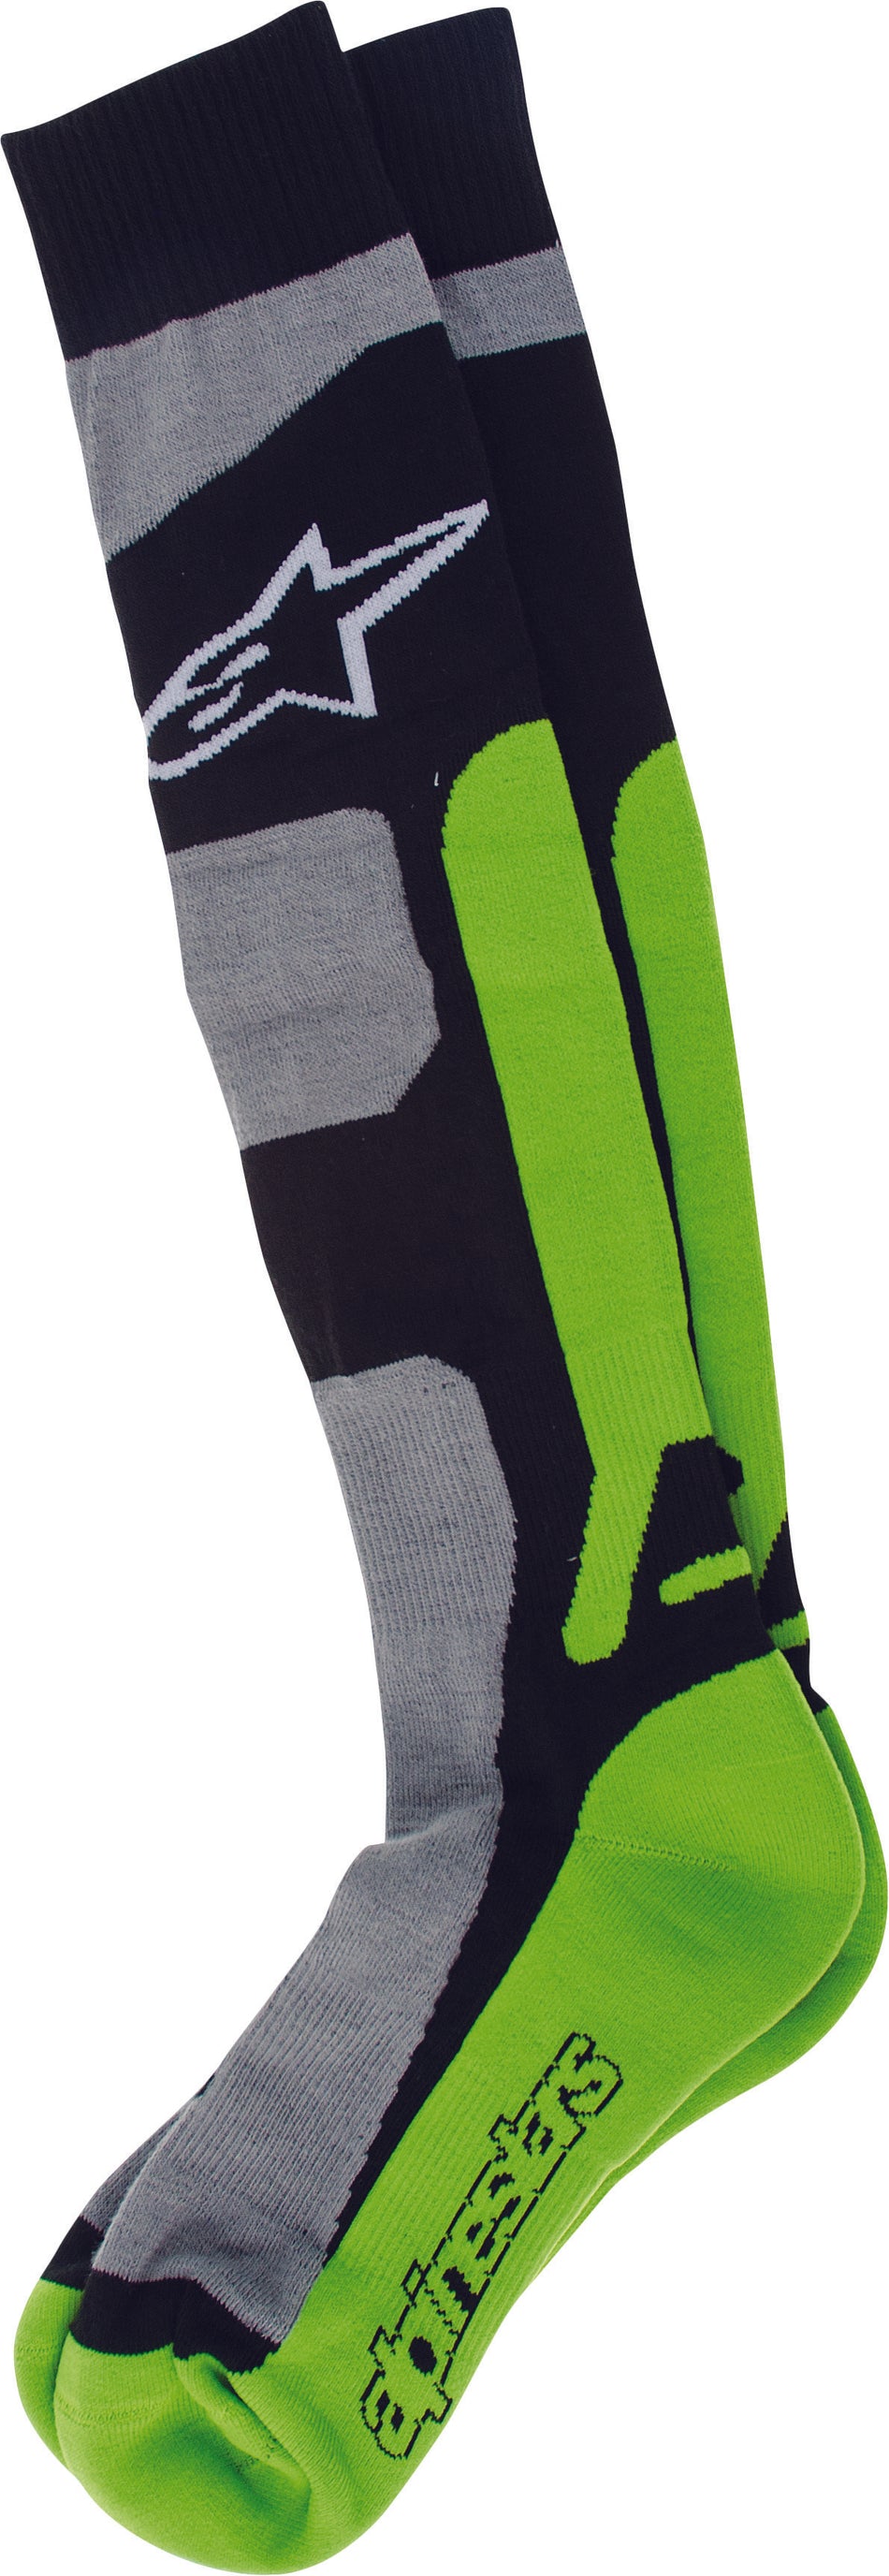 ALPINESTARS Tech Coolmax Socks Green Sm-Md 4702114-916-S/M